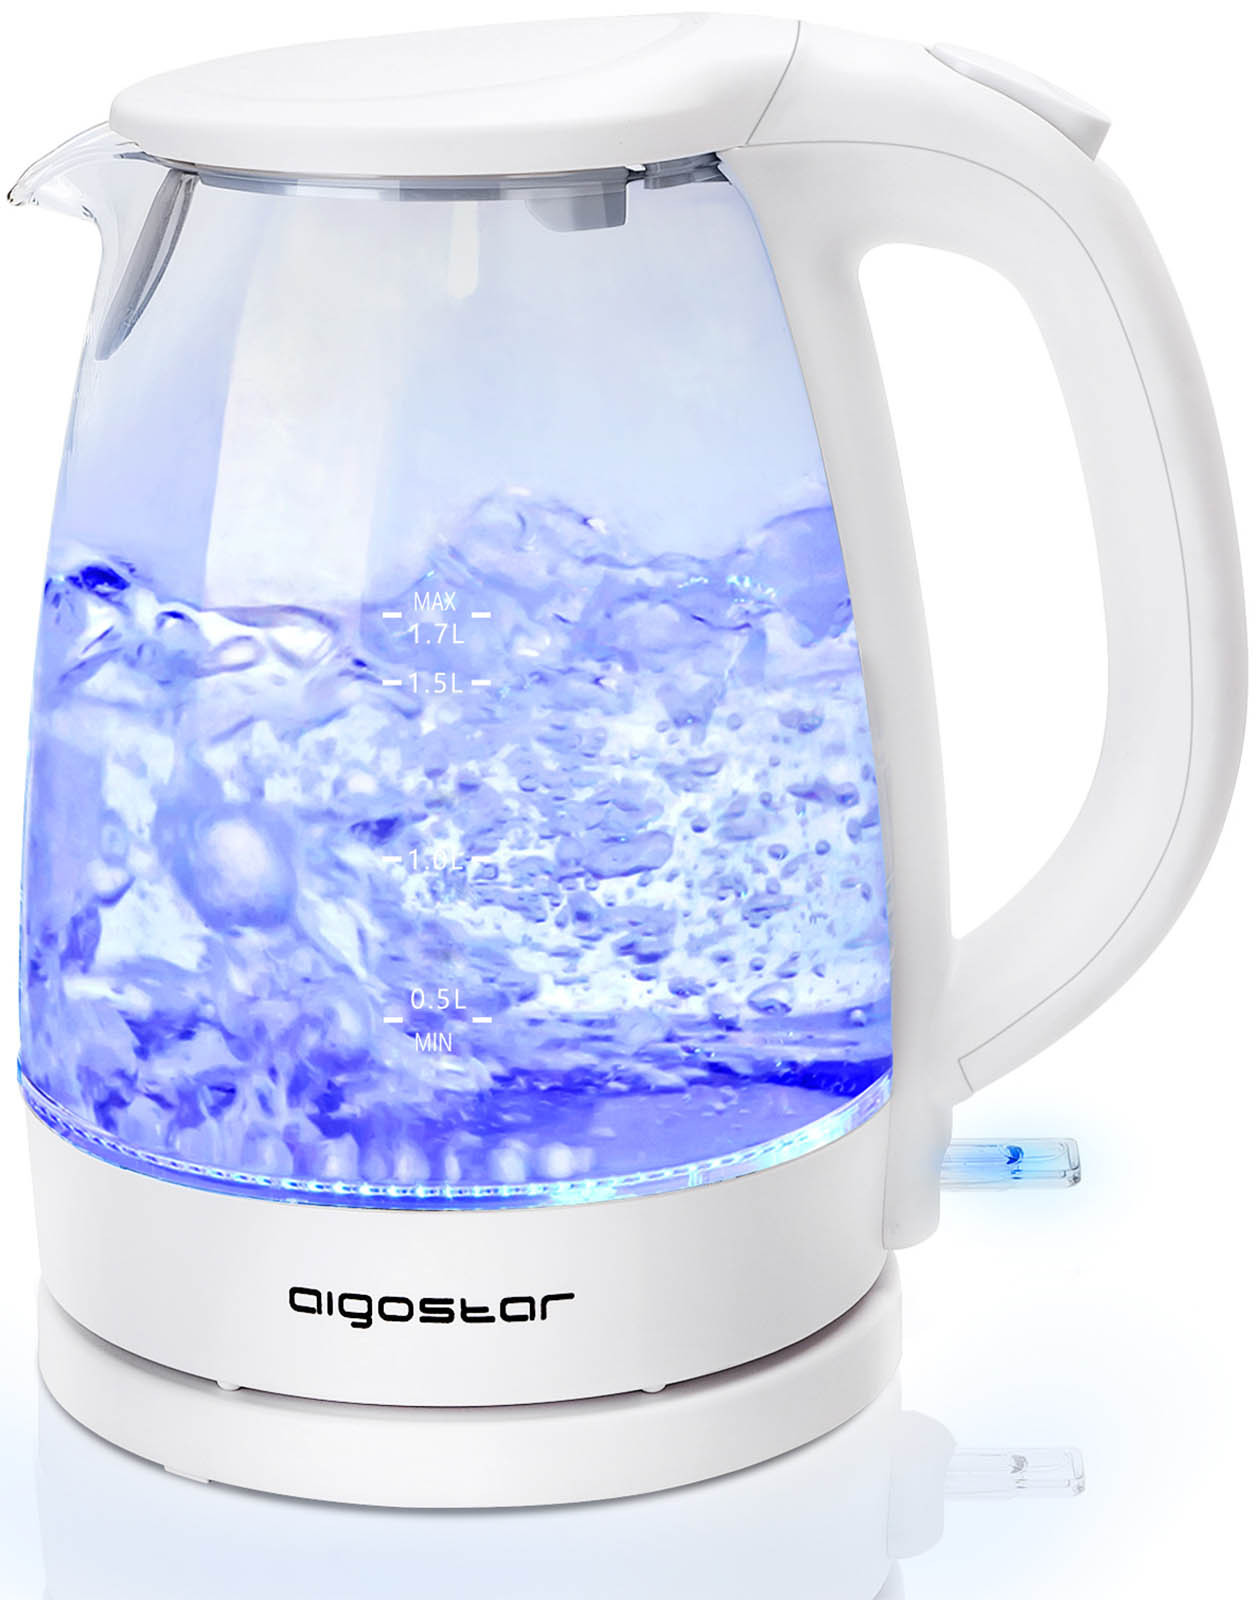 Aigostar Eve - Glas Wasserkocher mit LED-Beleuchtung, 2200 Watt, 1,7 Liter, Edelstahl, Trockengehschutz, Auto-Off, BPA frei, weiß.